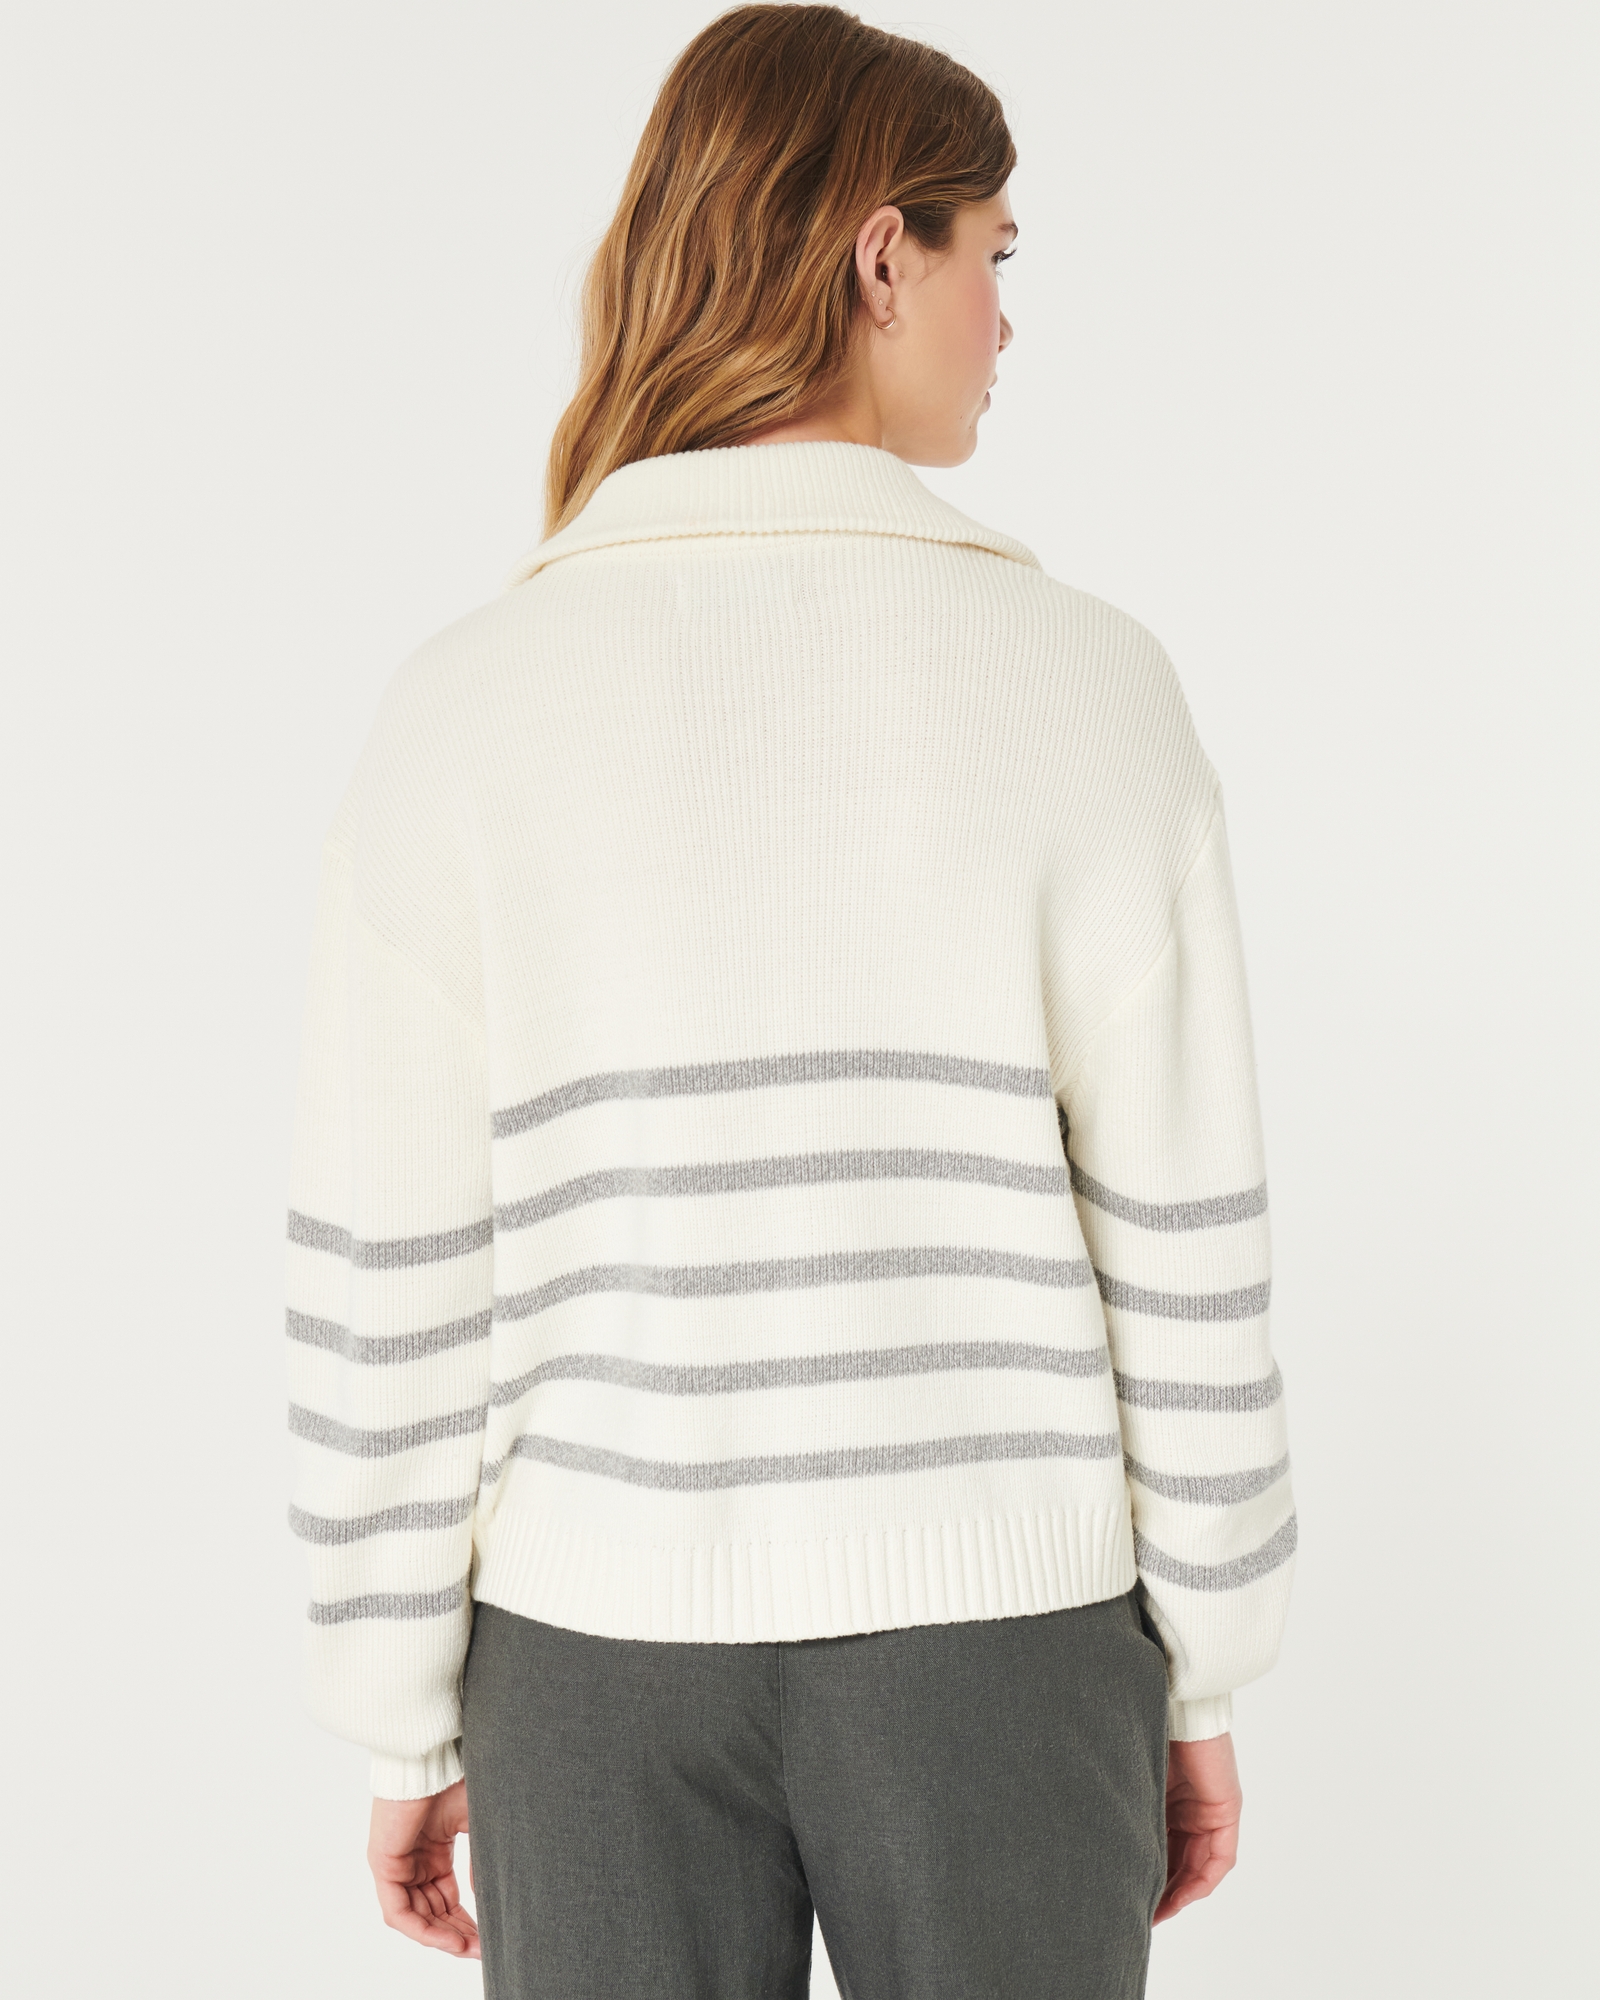 Women's Oversized Half-Zip Sweater, Women's Tops